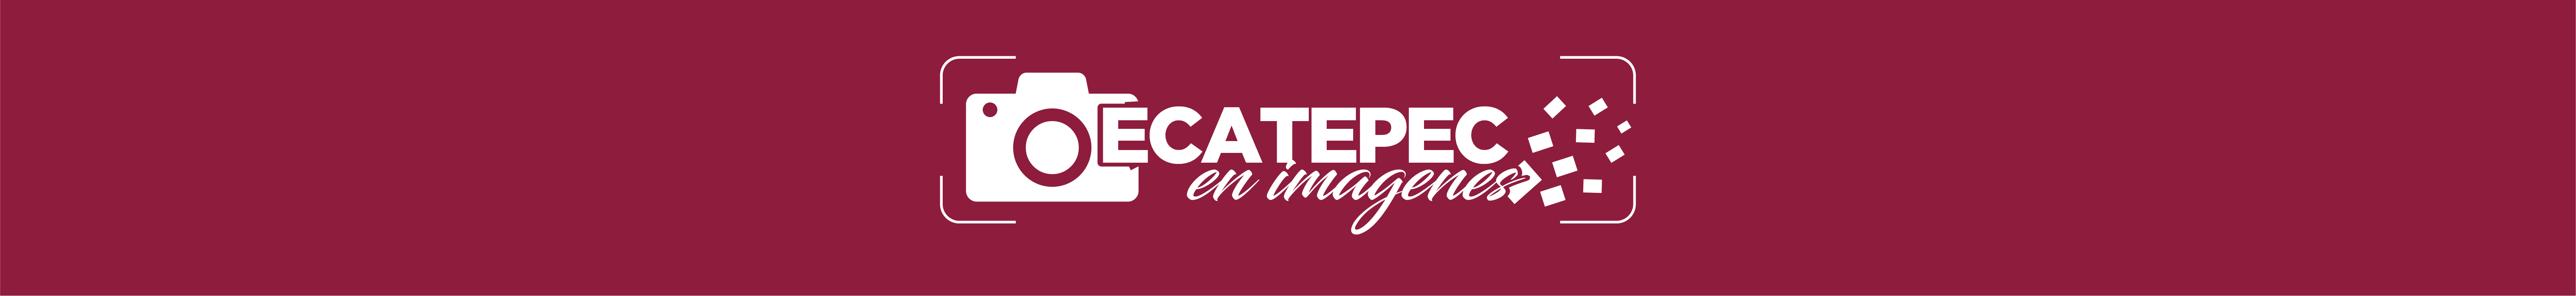 separador-ecatepec-imagenes